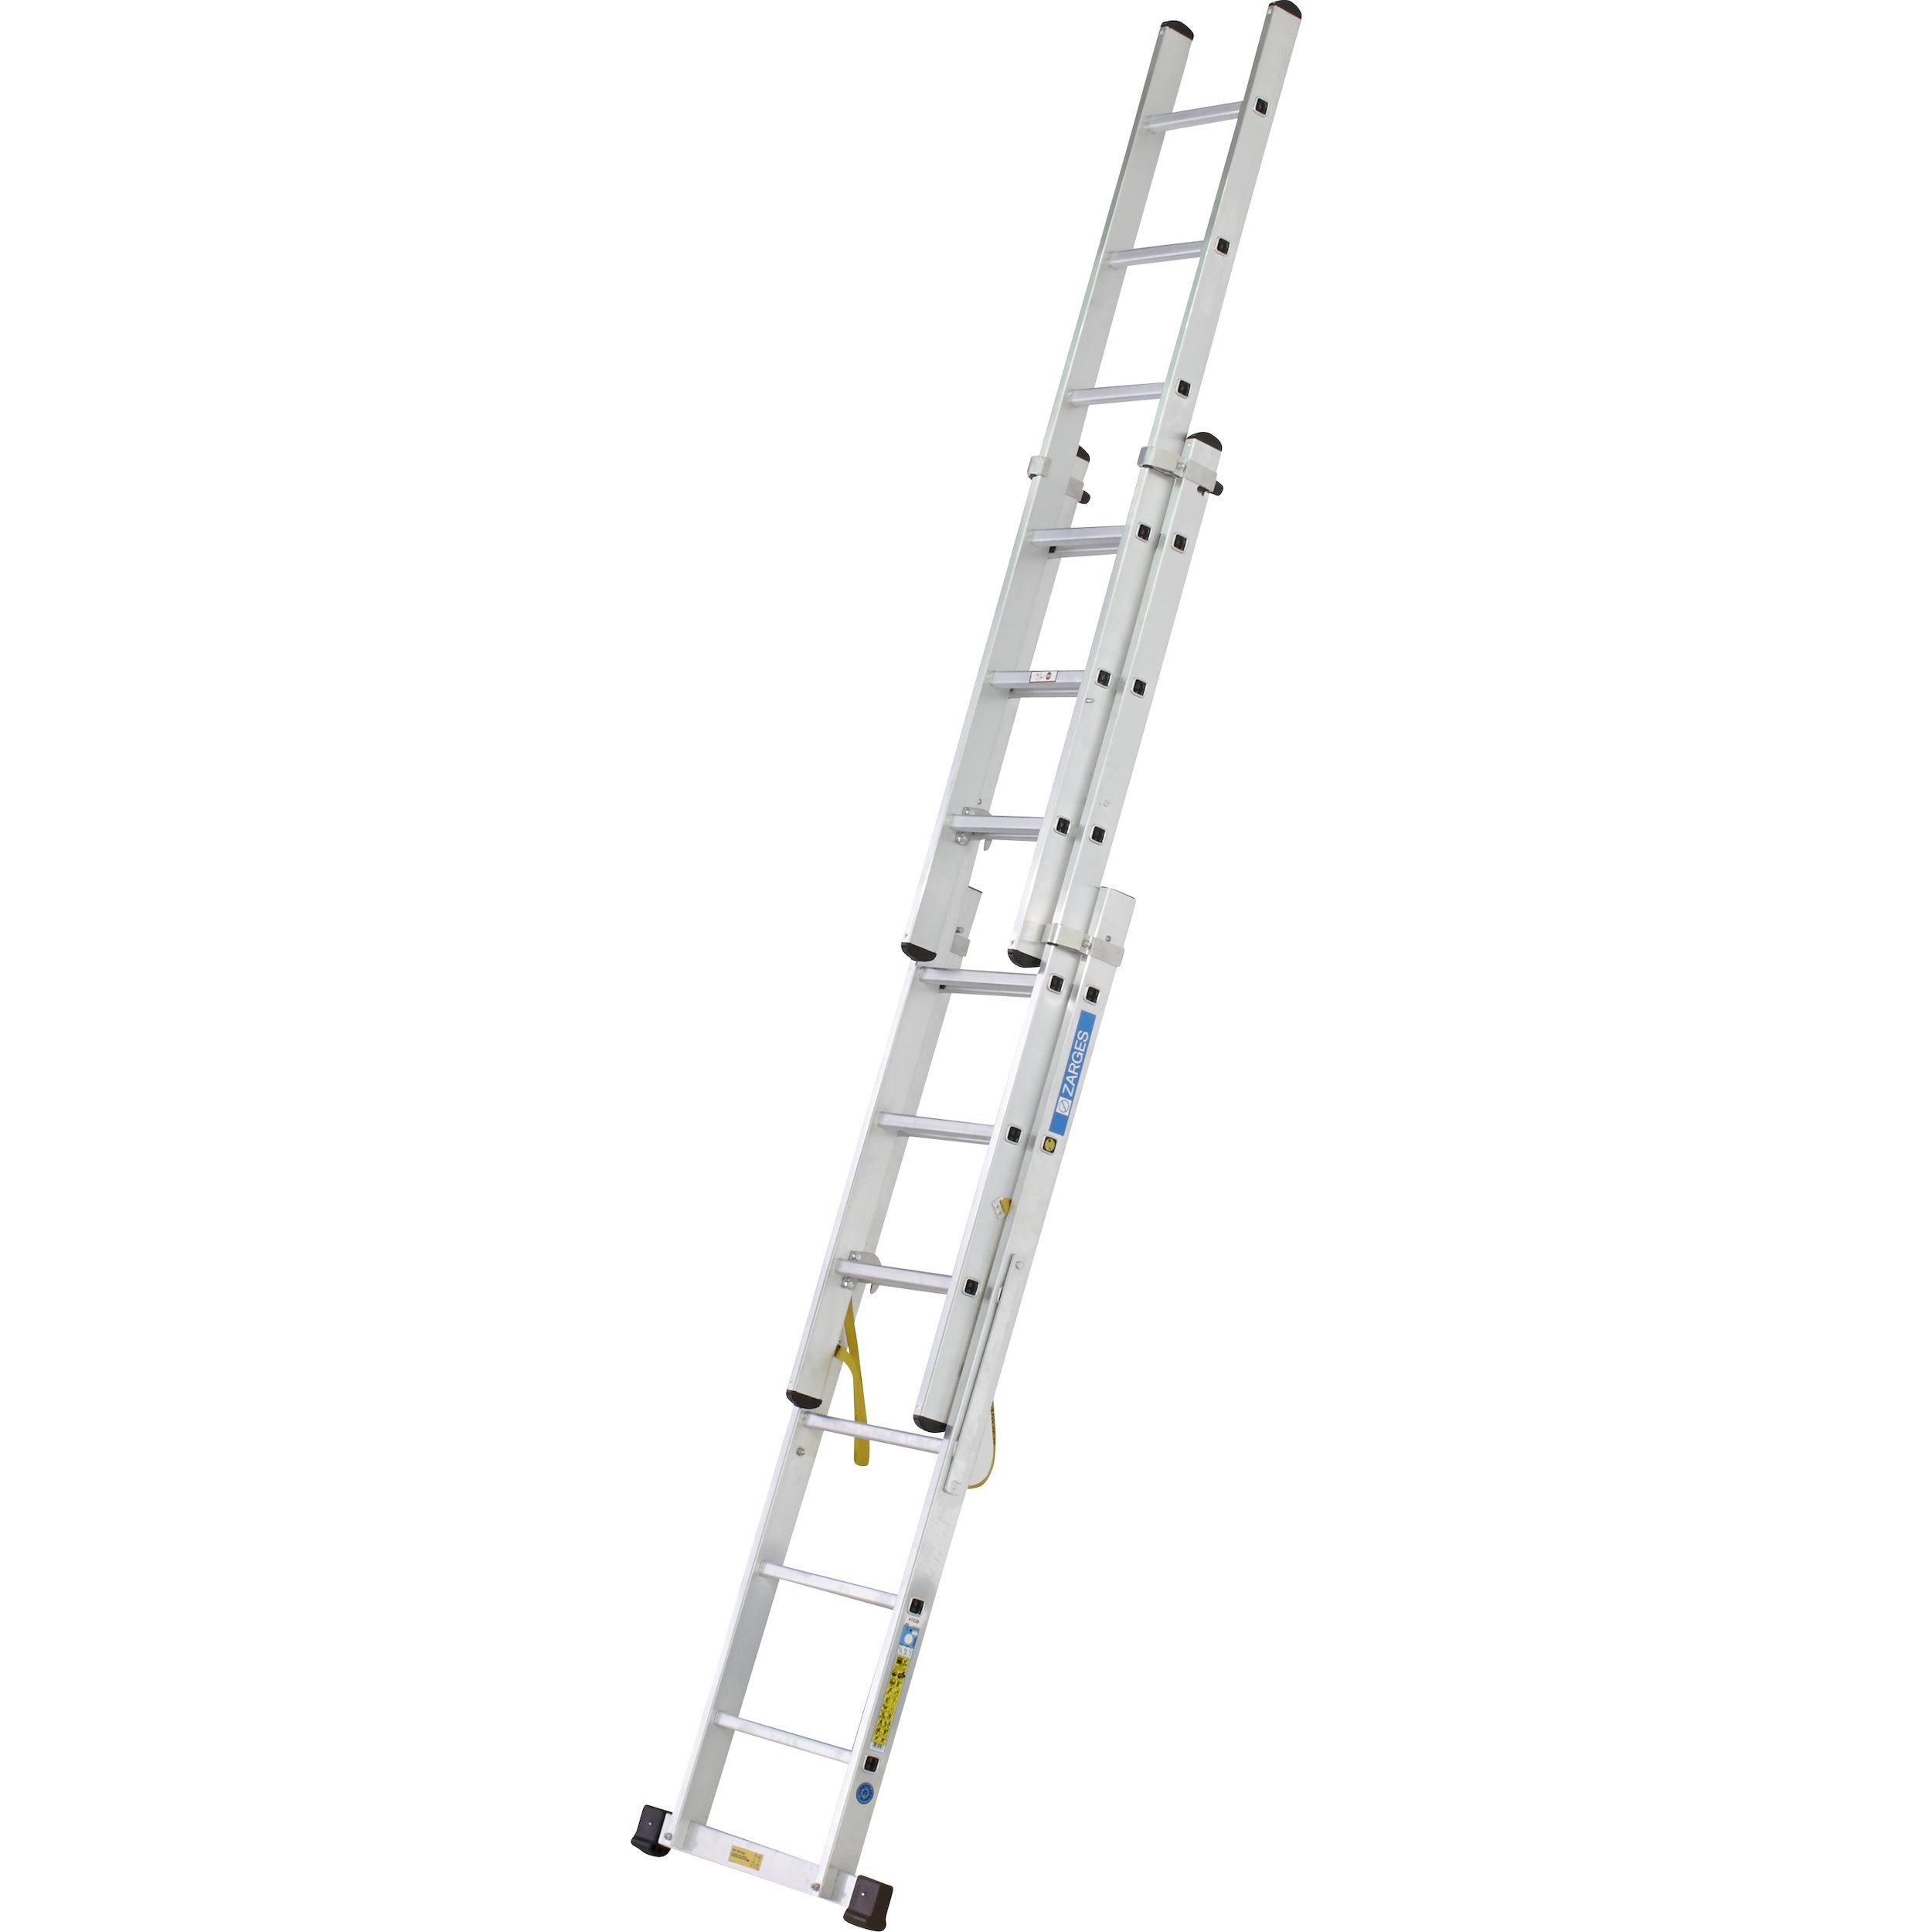 Zarges ZAR41524 Skymaster Industrial Ladder 3-Part 3 x 14 Rungs